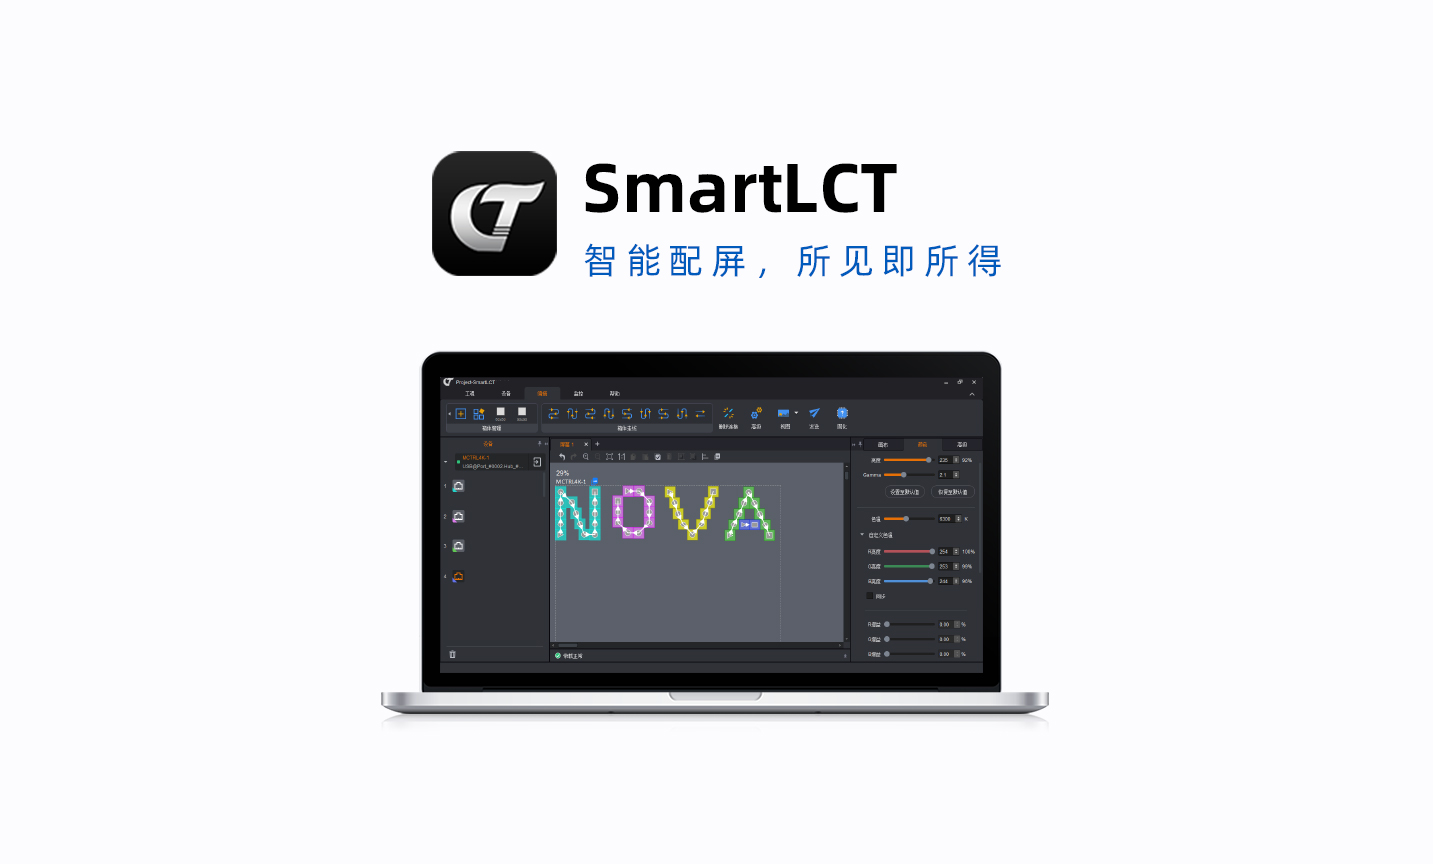 智能配屏软件 SmartLCT